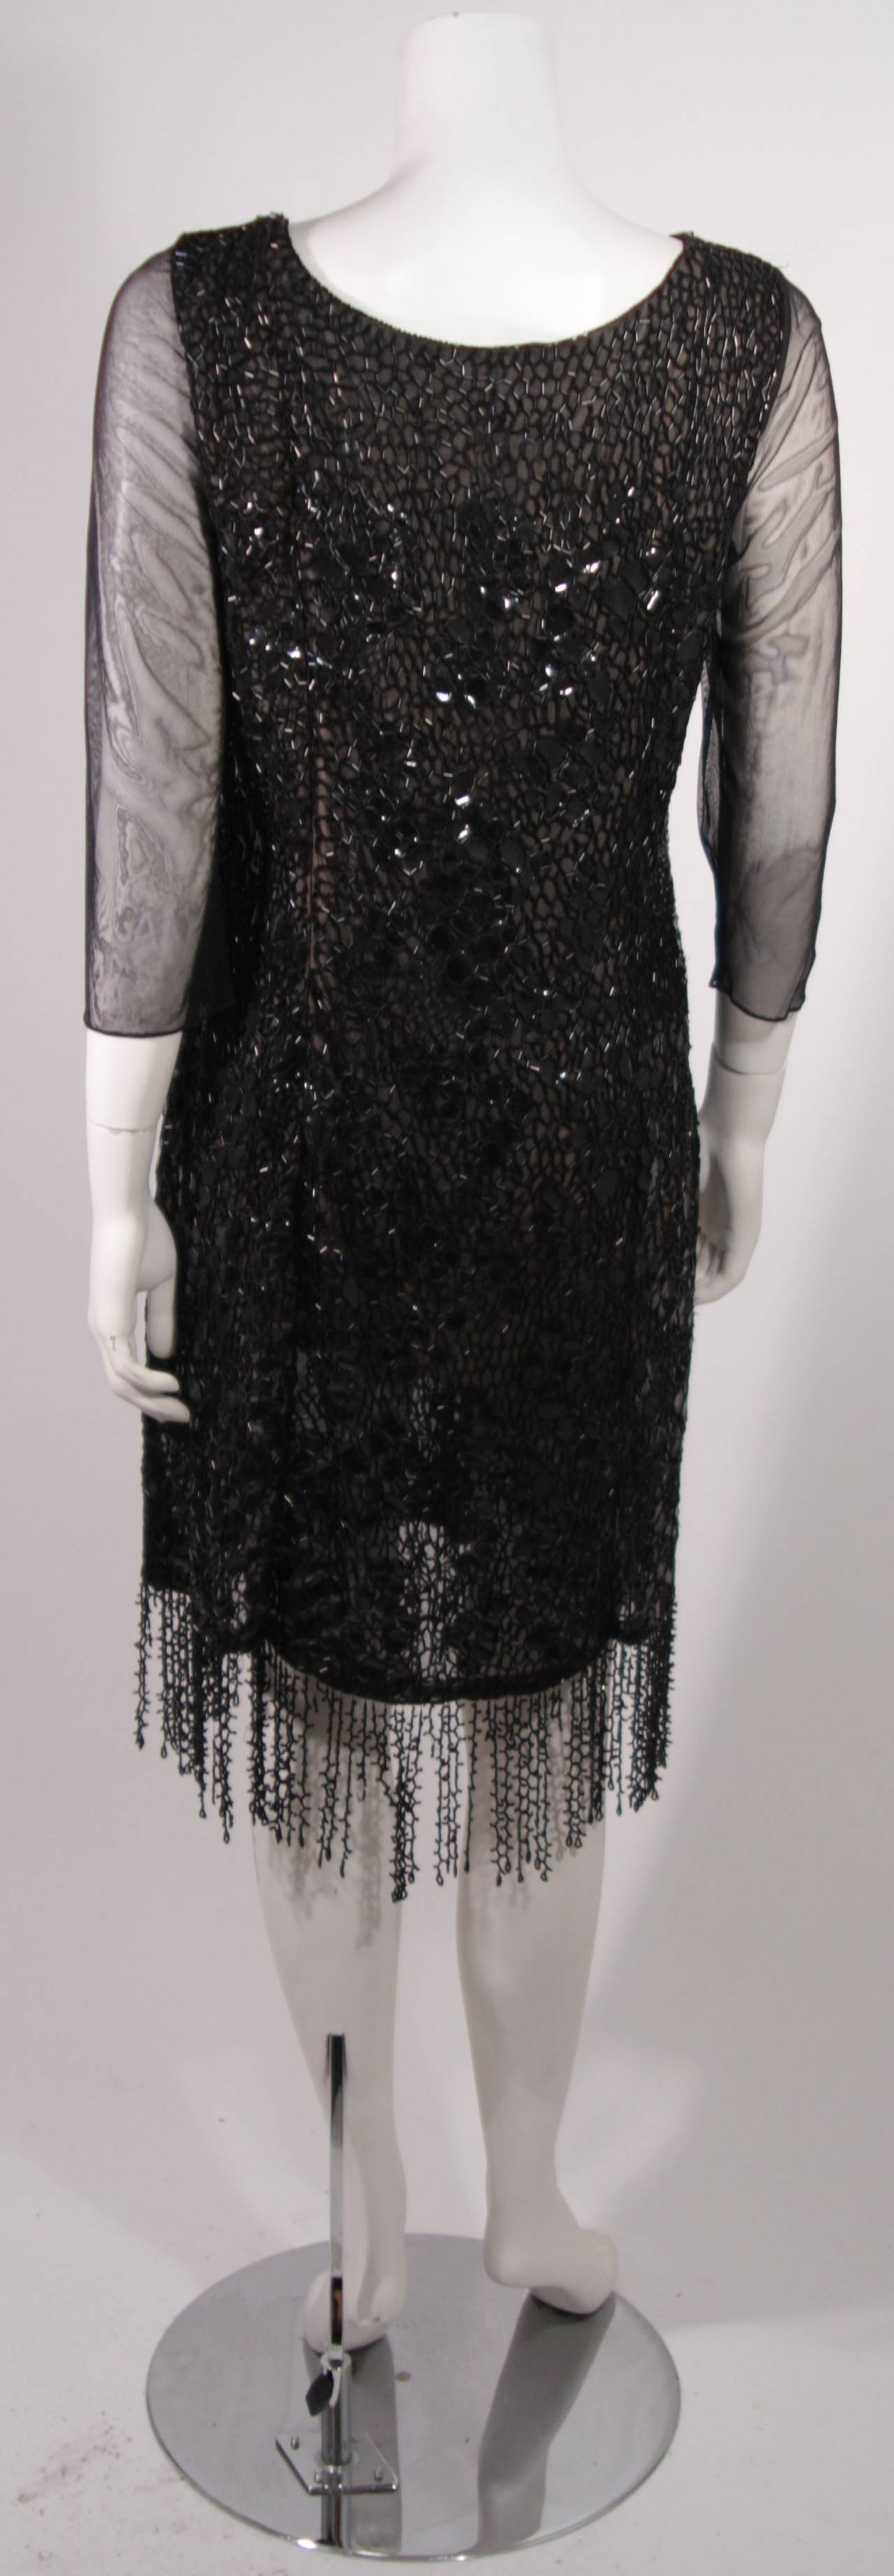 Women's Oscar De La Renta Black Sequin Cocktail Dress Size 12 For Sale